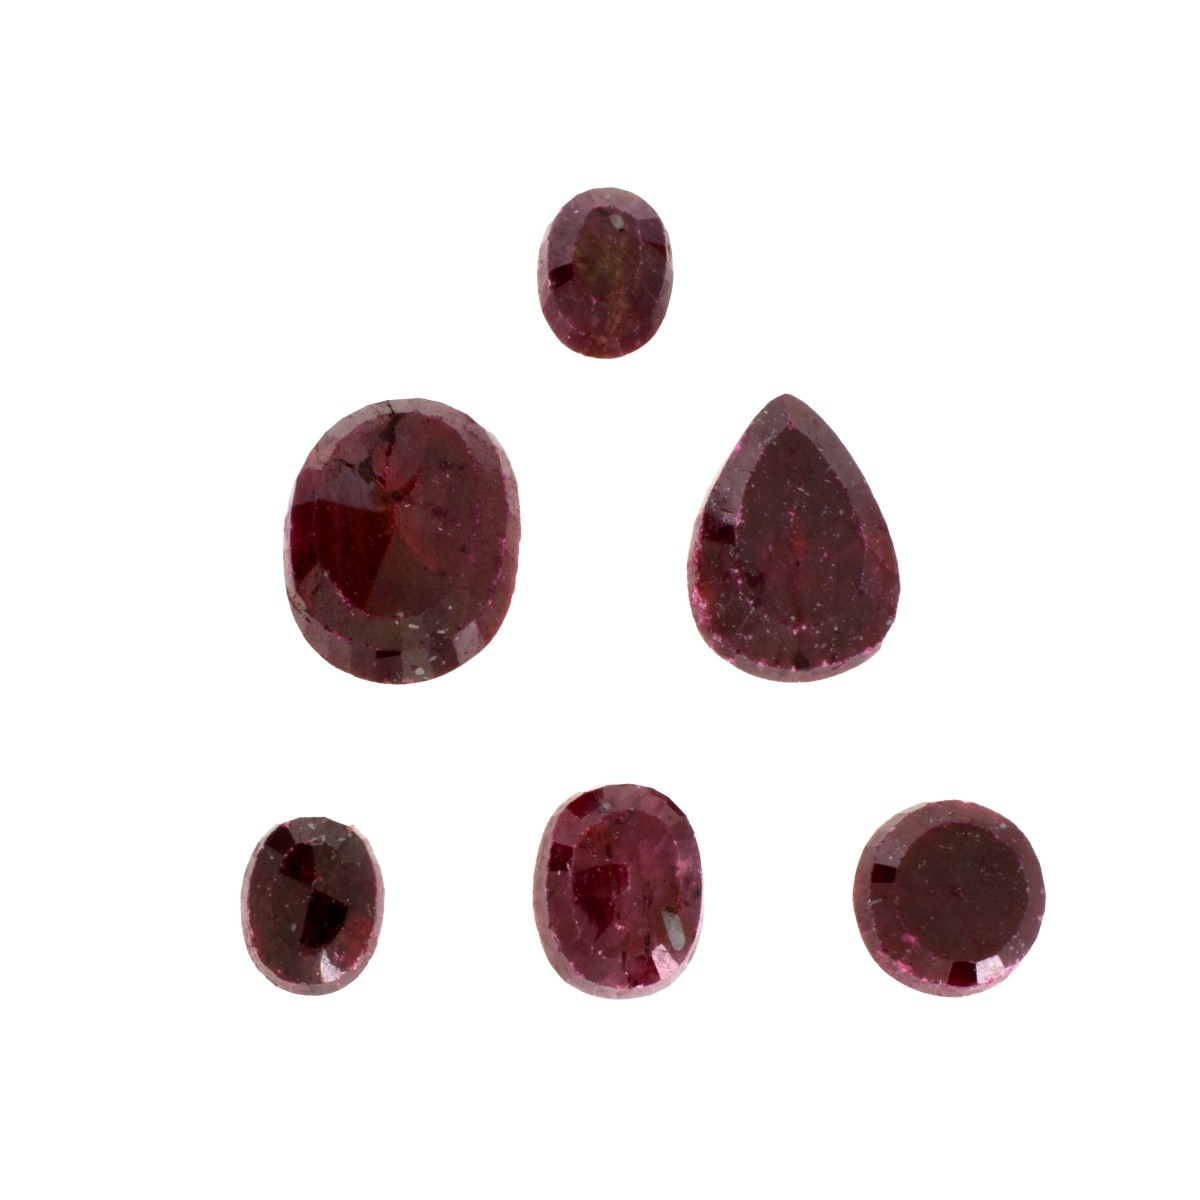 Six (6) Large Ruby Gemstones